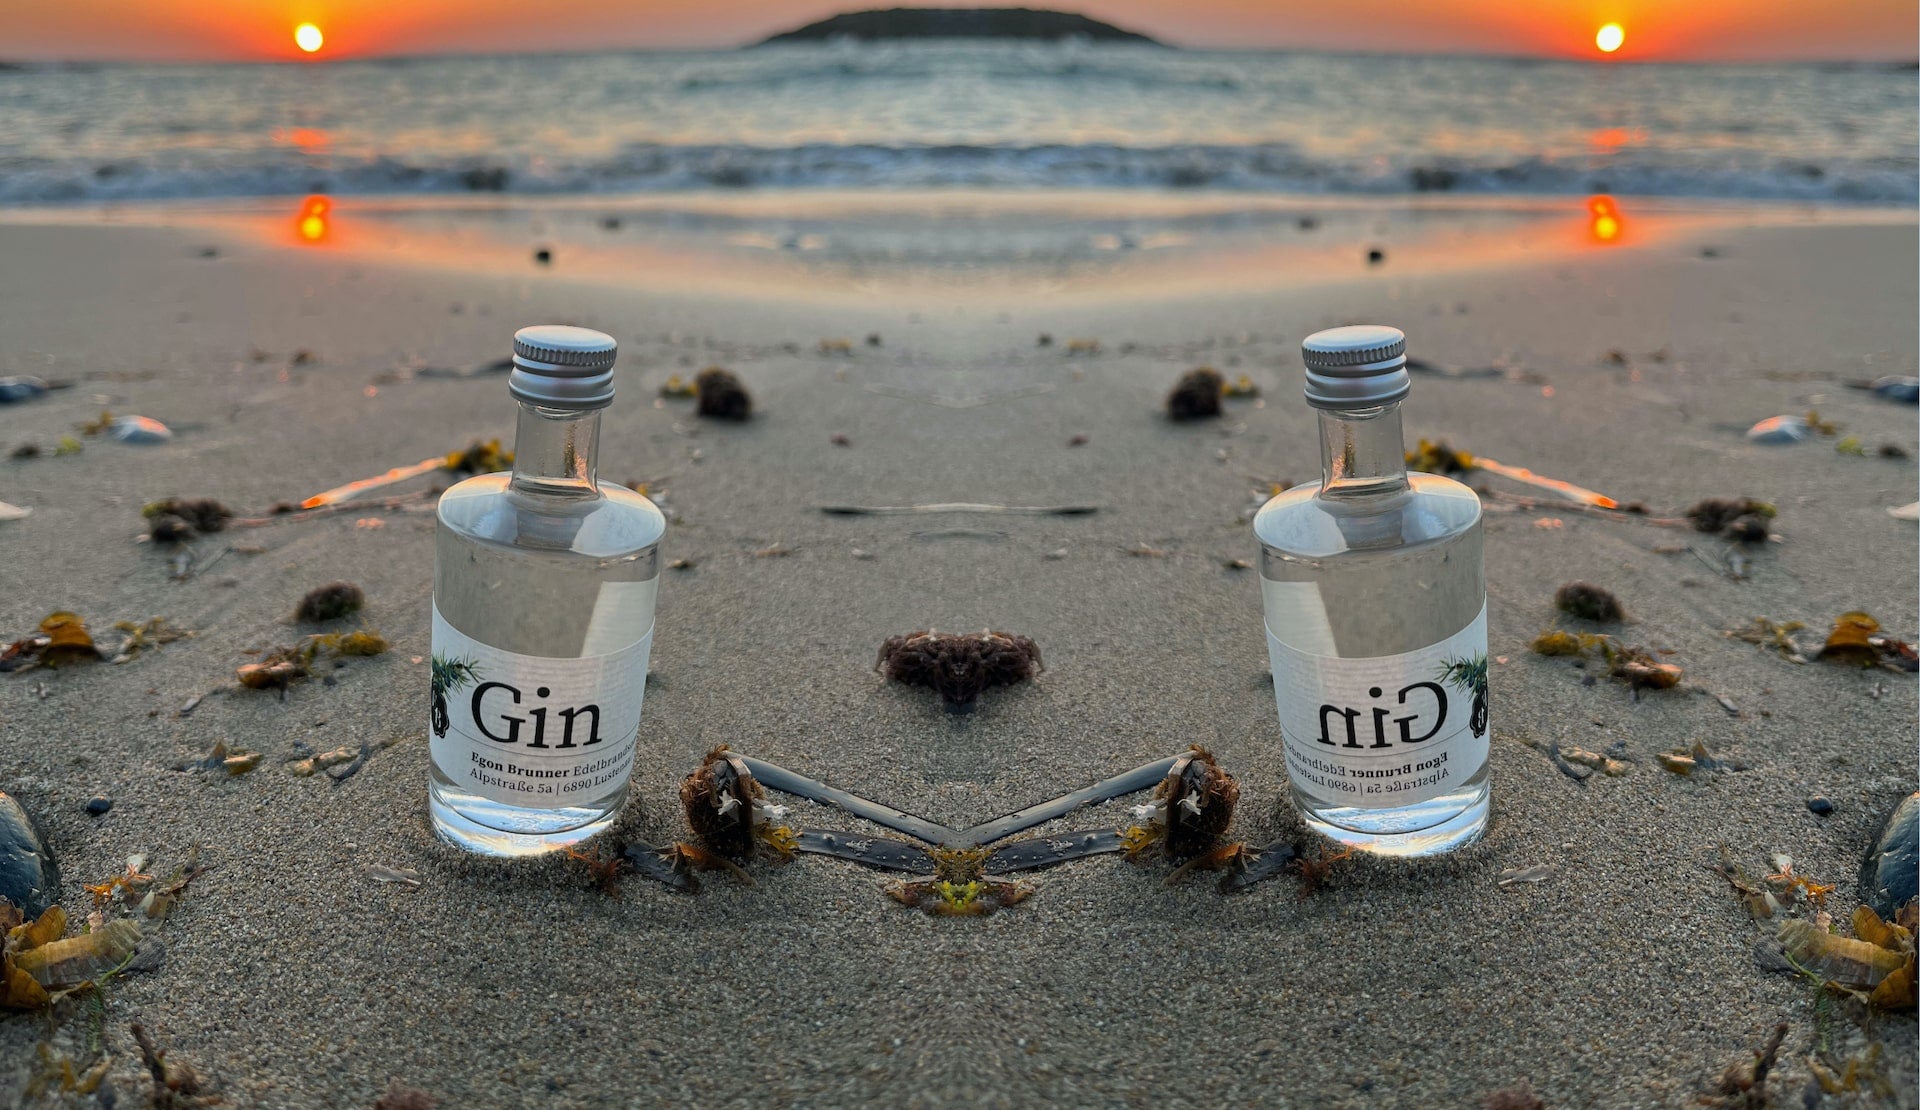 50ml Miniflasche mit Gin der Destillerie Brunner im Sand am Meer von Kreta während eines Sonnenuntergangs.